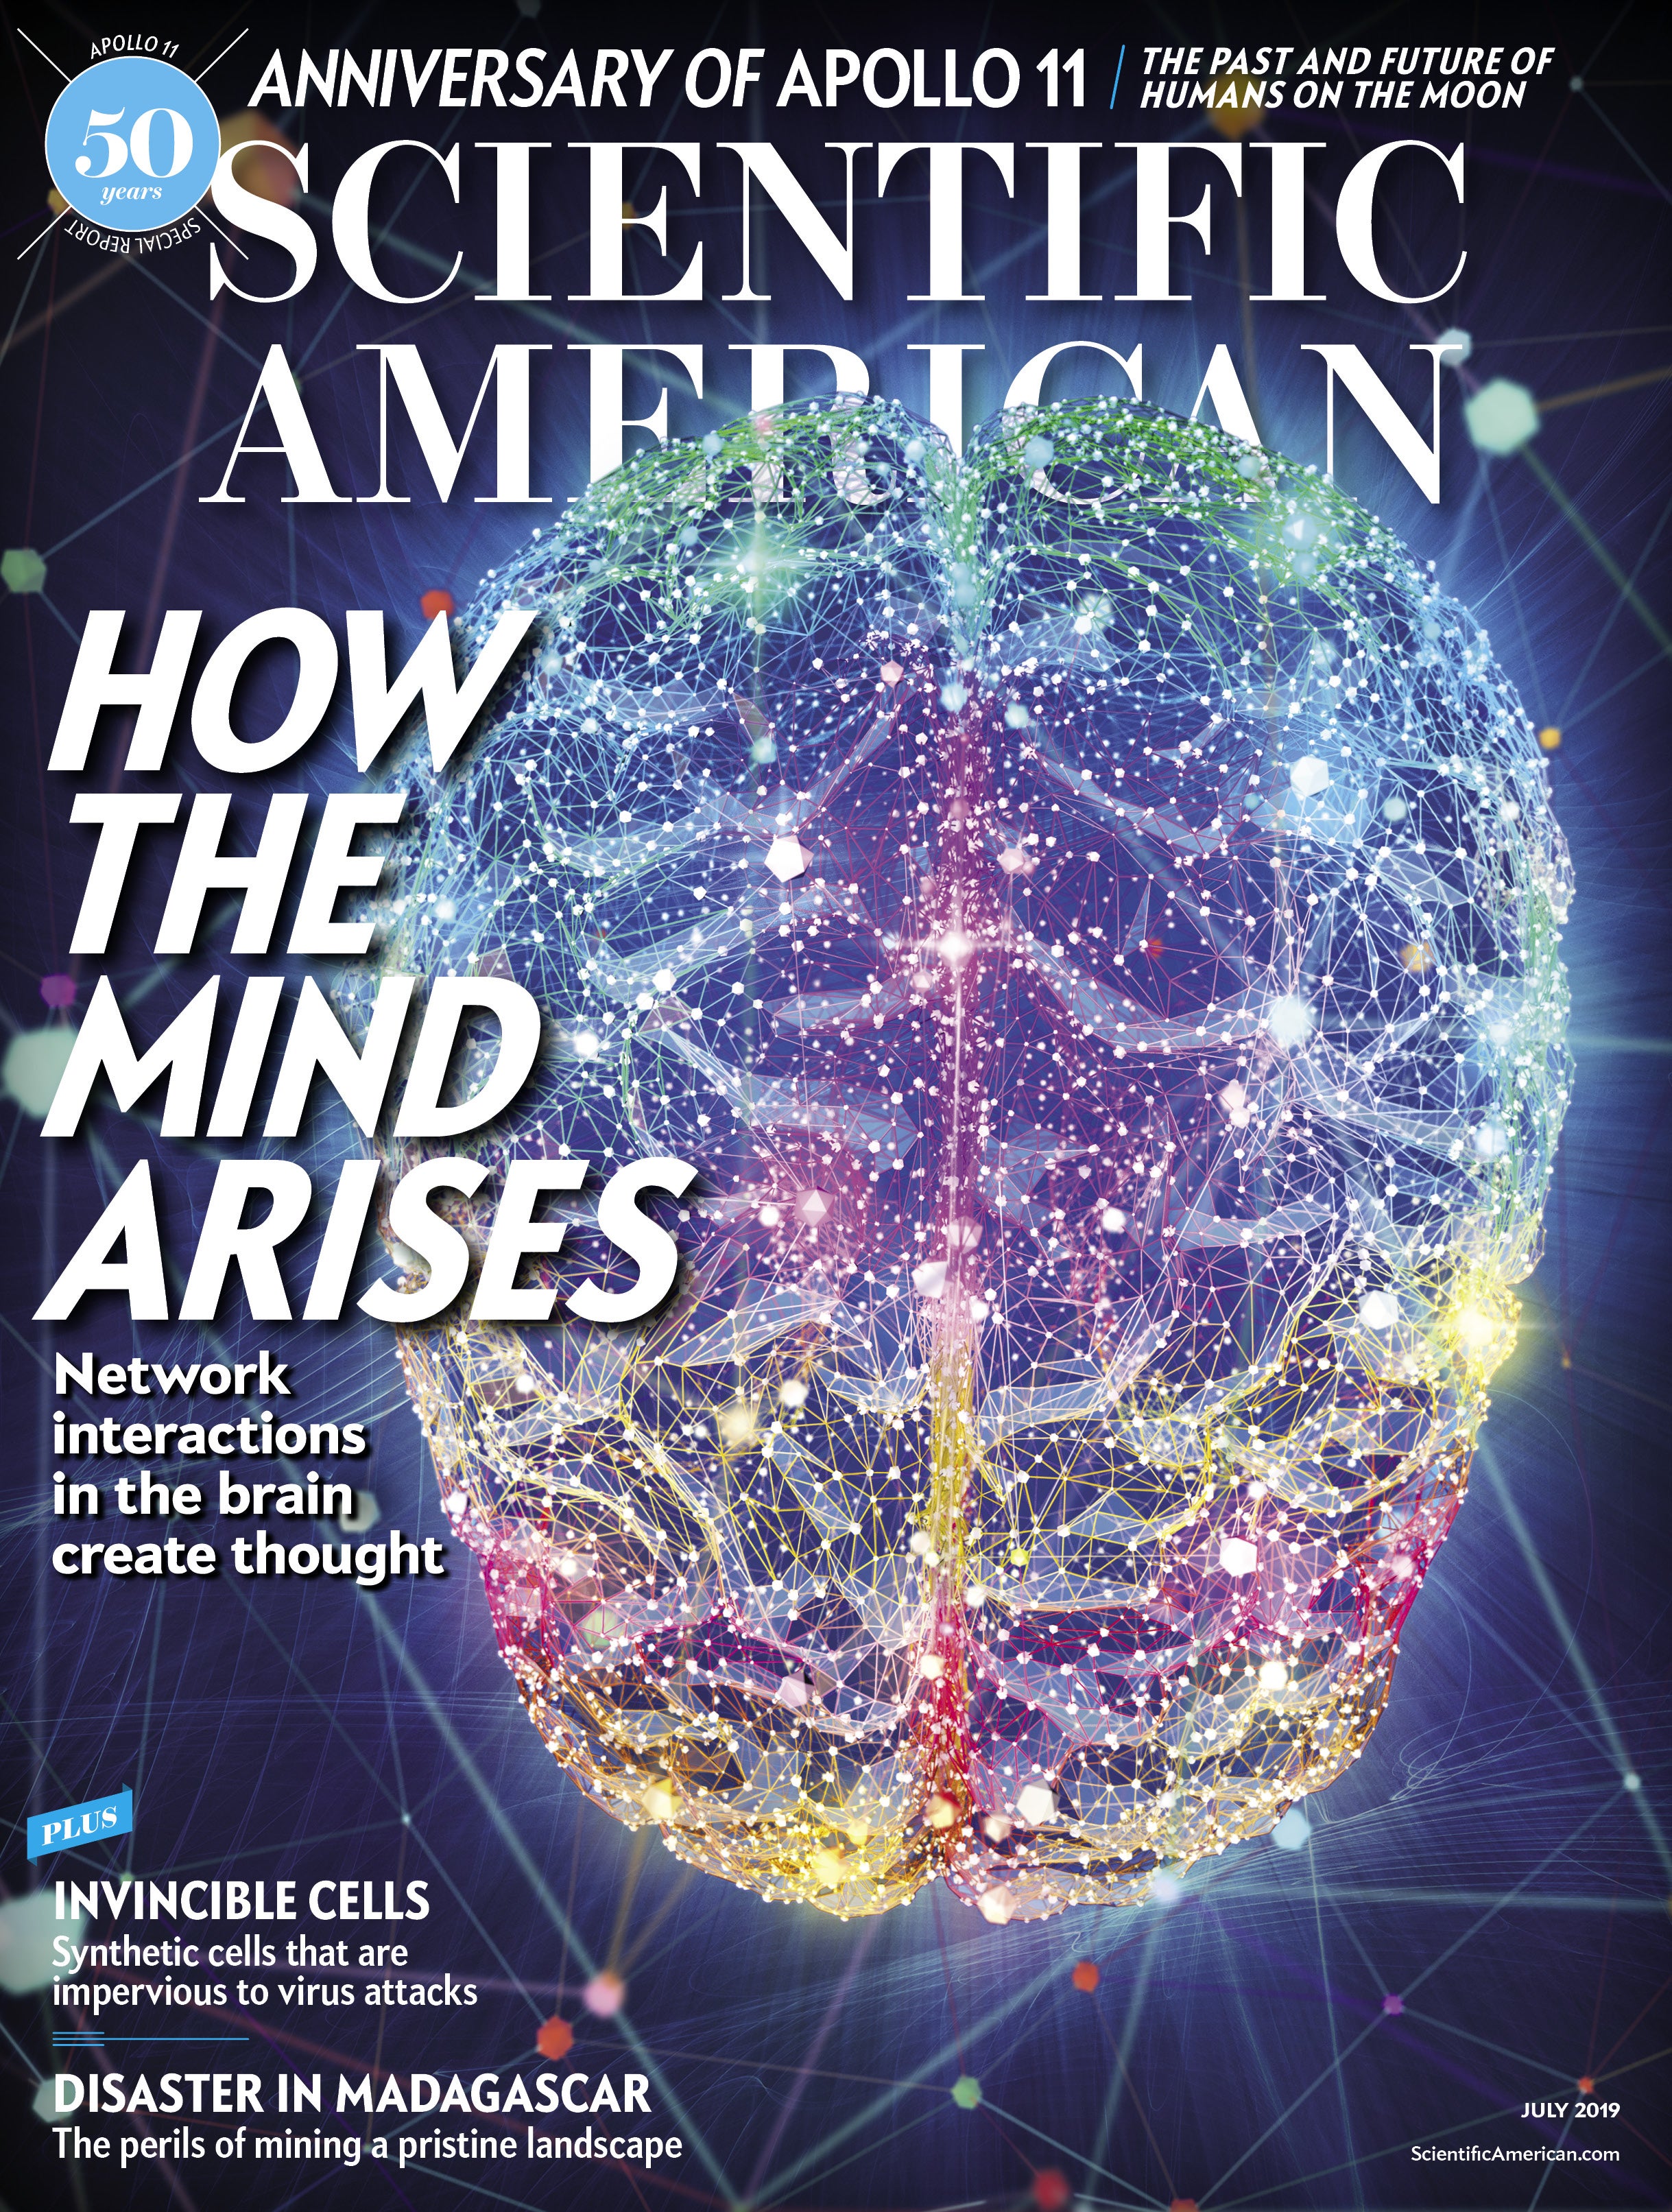 Scientific American Volume 321, Issue 1